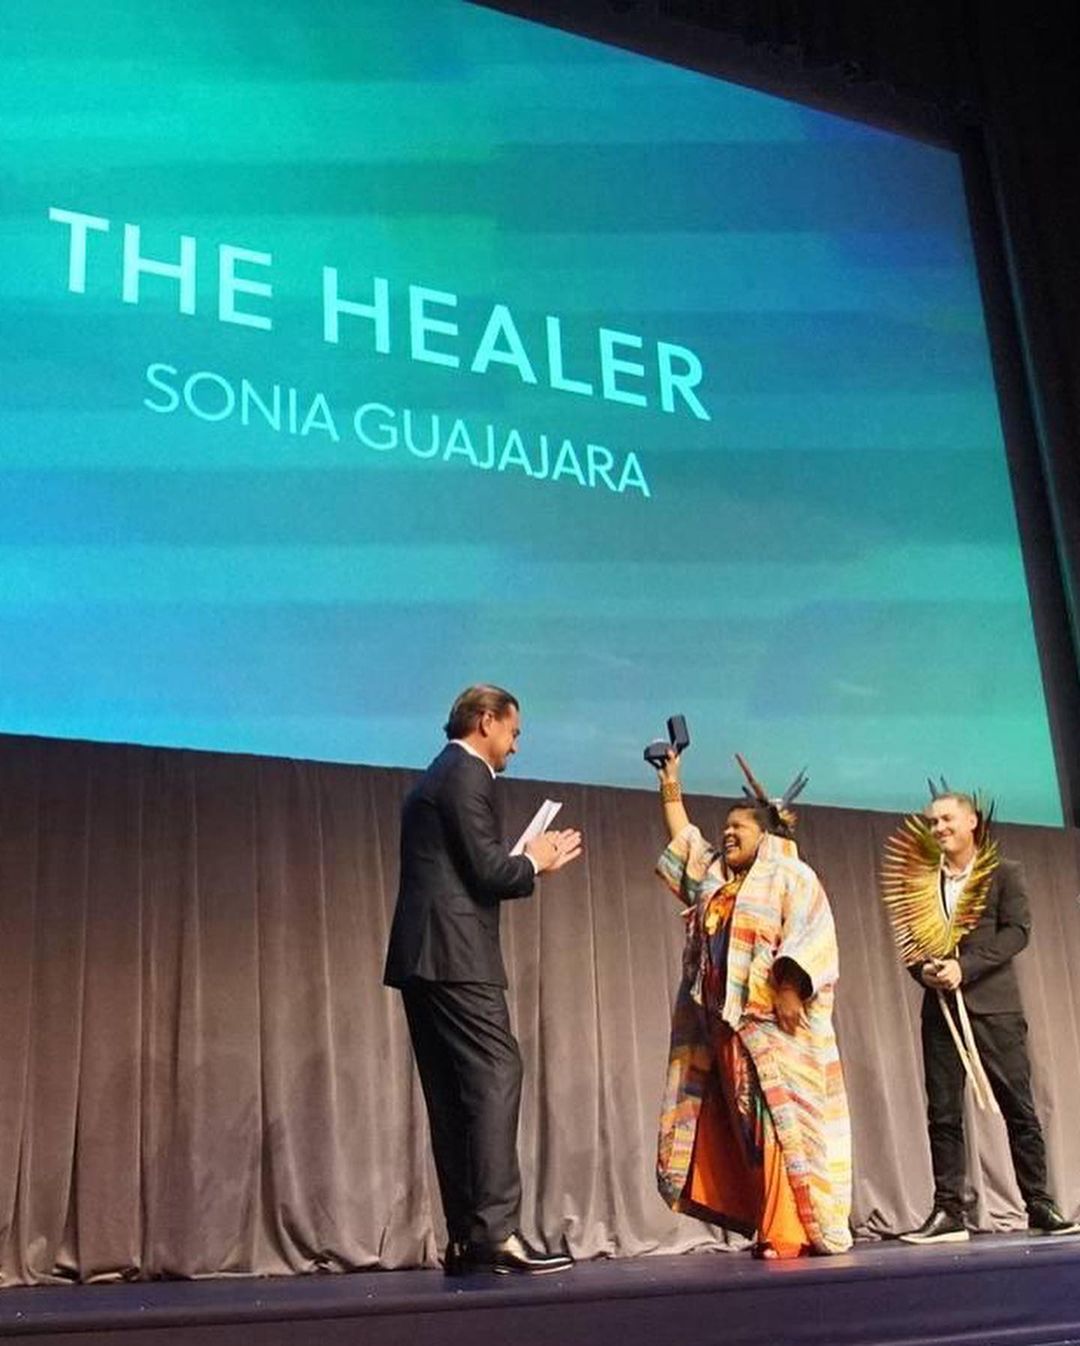 Ministra dos Povos Indígenas recebeu prêmio 'The Healer' - Foto: Reprodução/Instagram @ leonardodicaprio @guajajarasonia